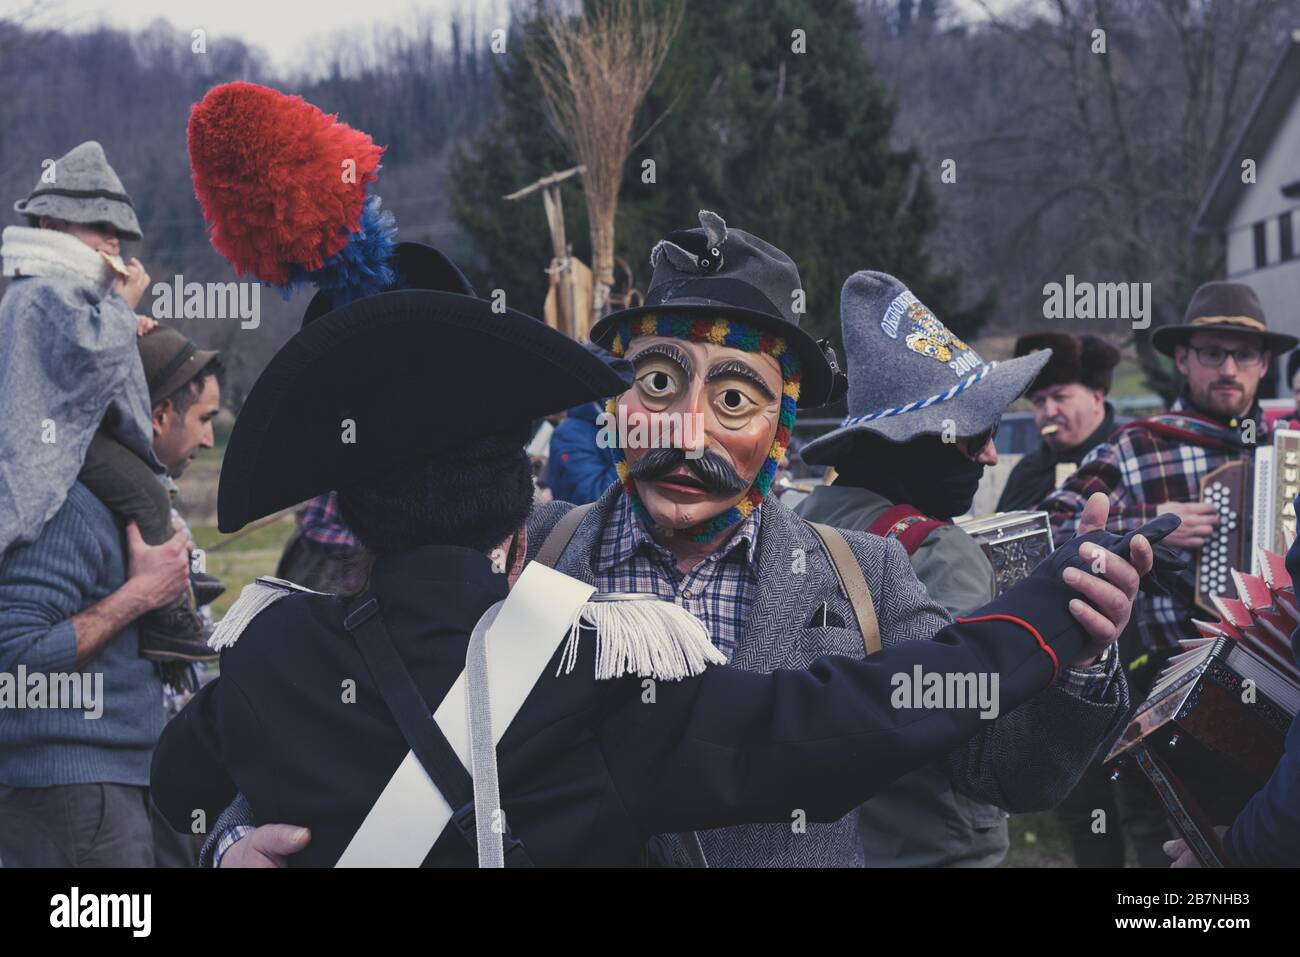 Deux hommes masqués dansant avec un groupe traditionnel en arrière-plan. Concept de musique folk. Défilé de carnaval de Pust. Banque D'Images